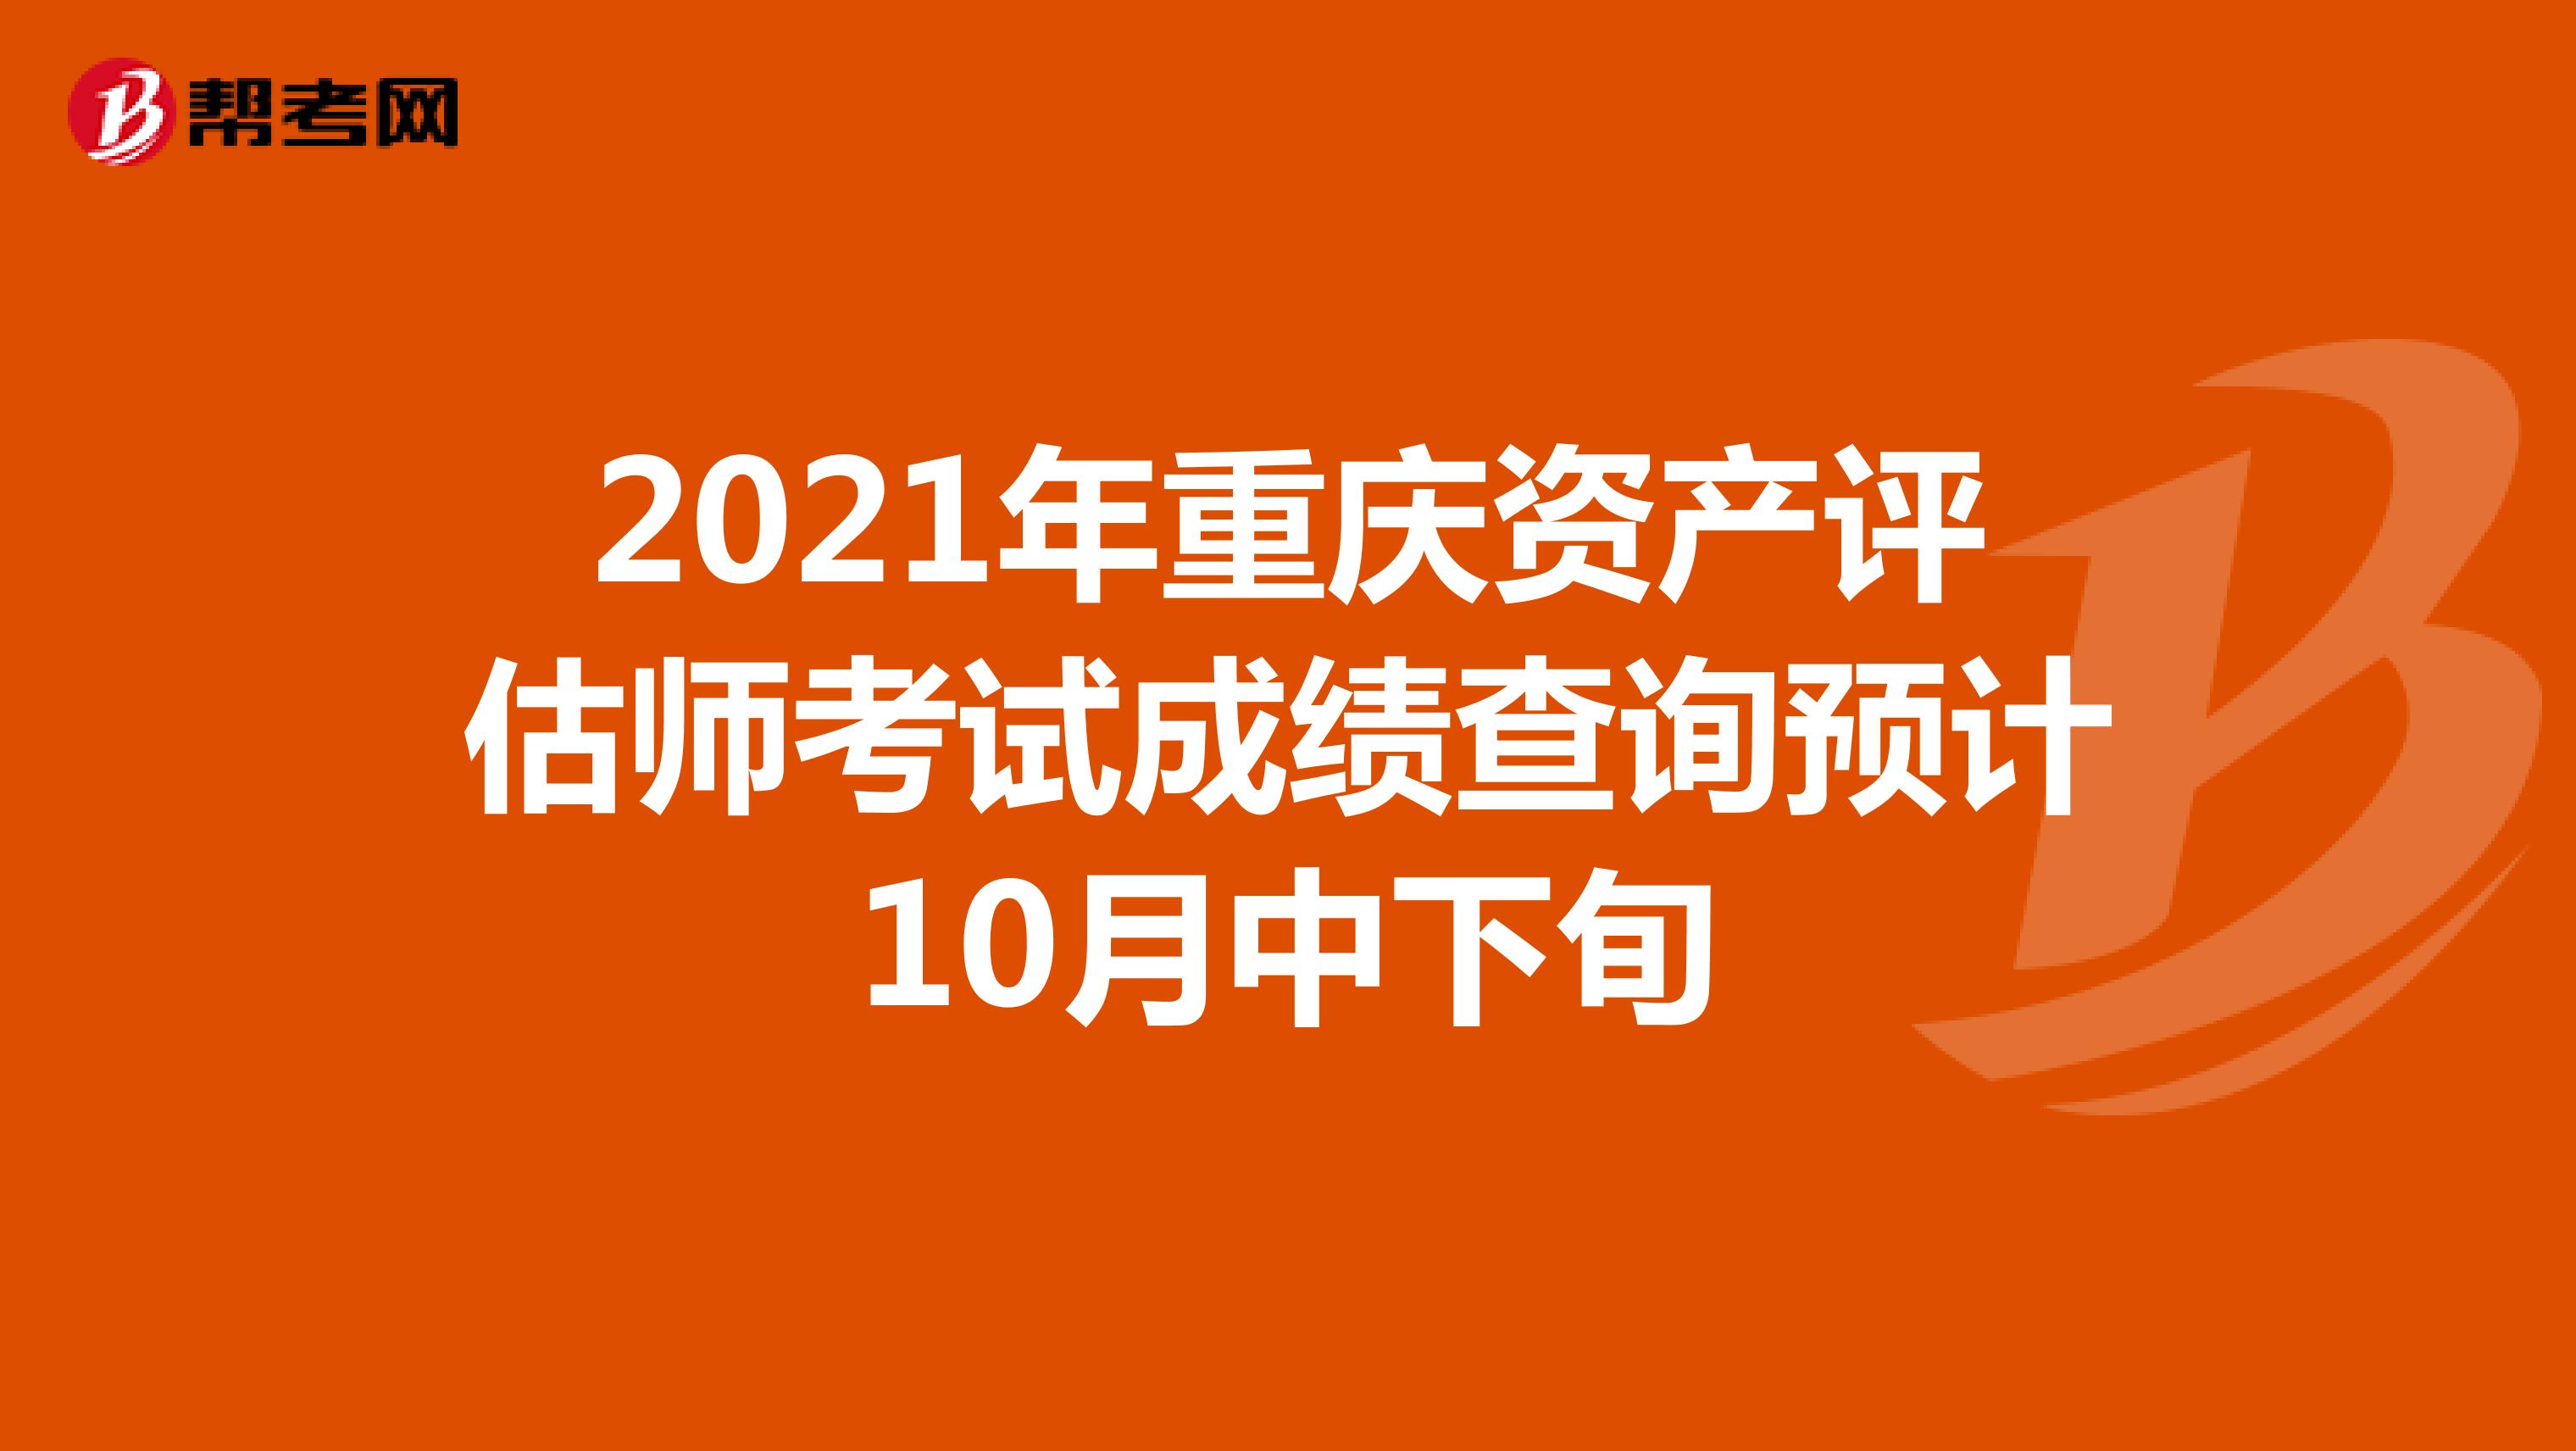 2021年重庆资产评估师考试成绩查询预计10月中下旬